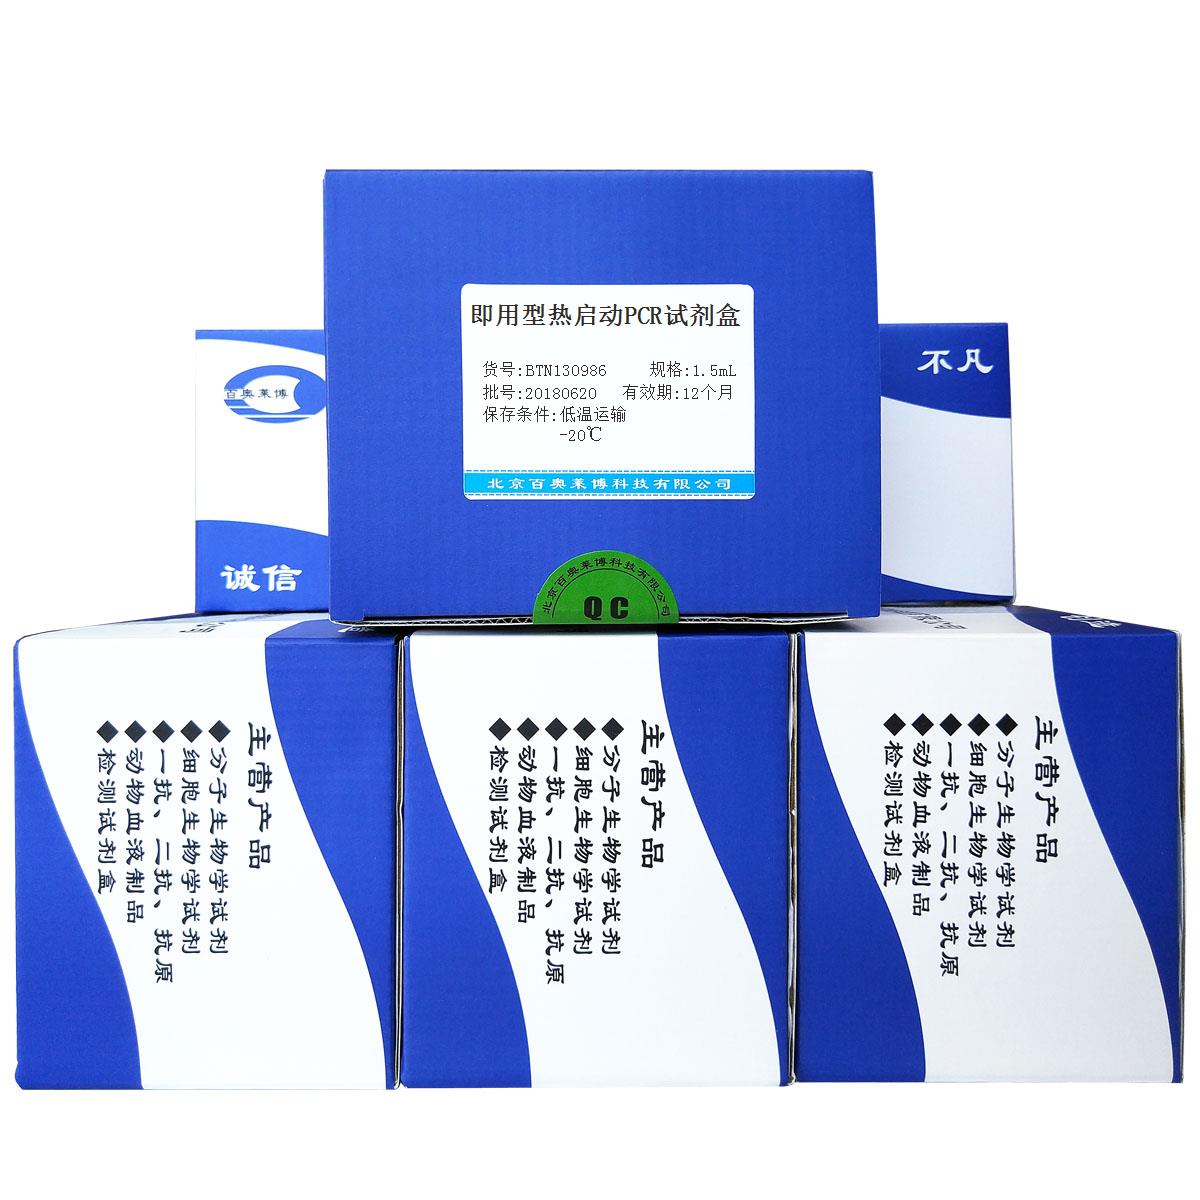 北京即用型热启动PCR试剂盒厂商